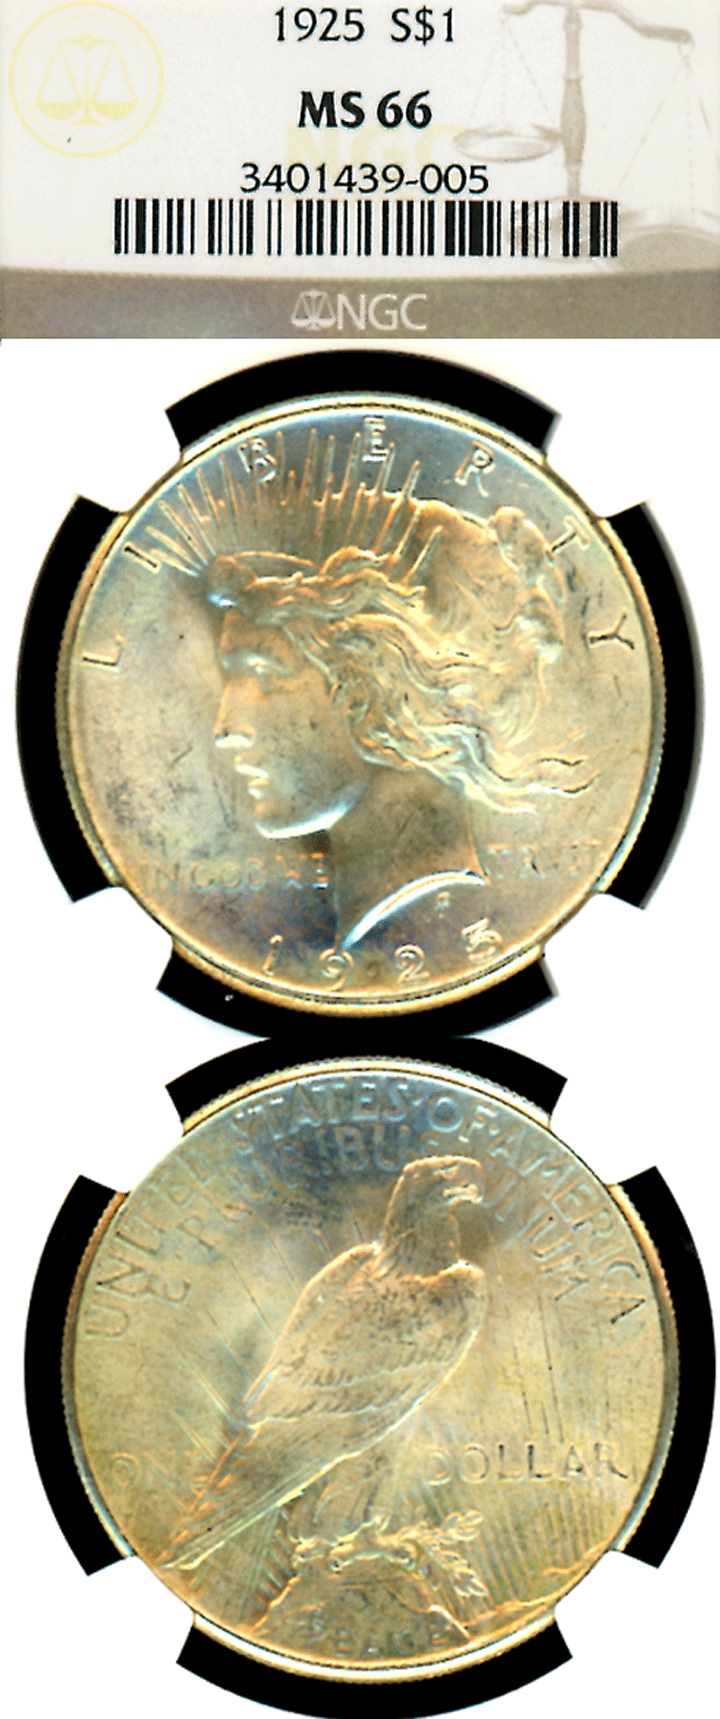 1925 $ MS-66